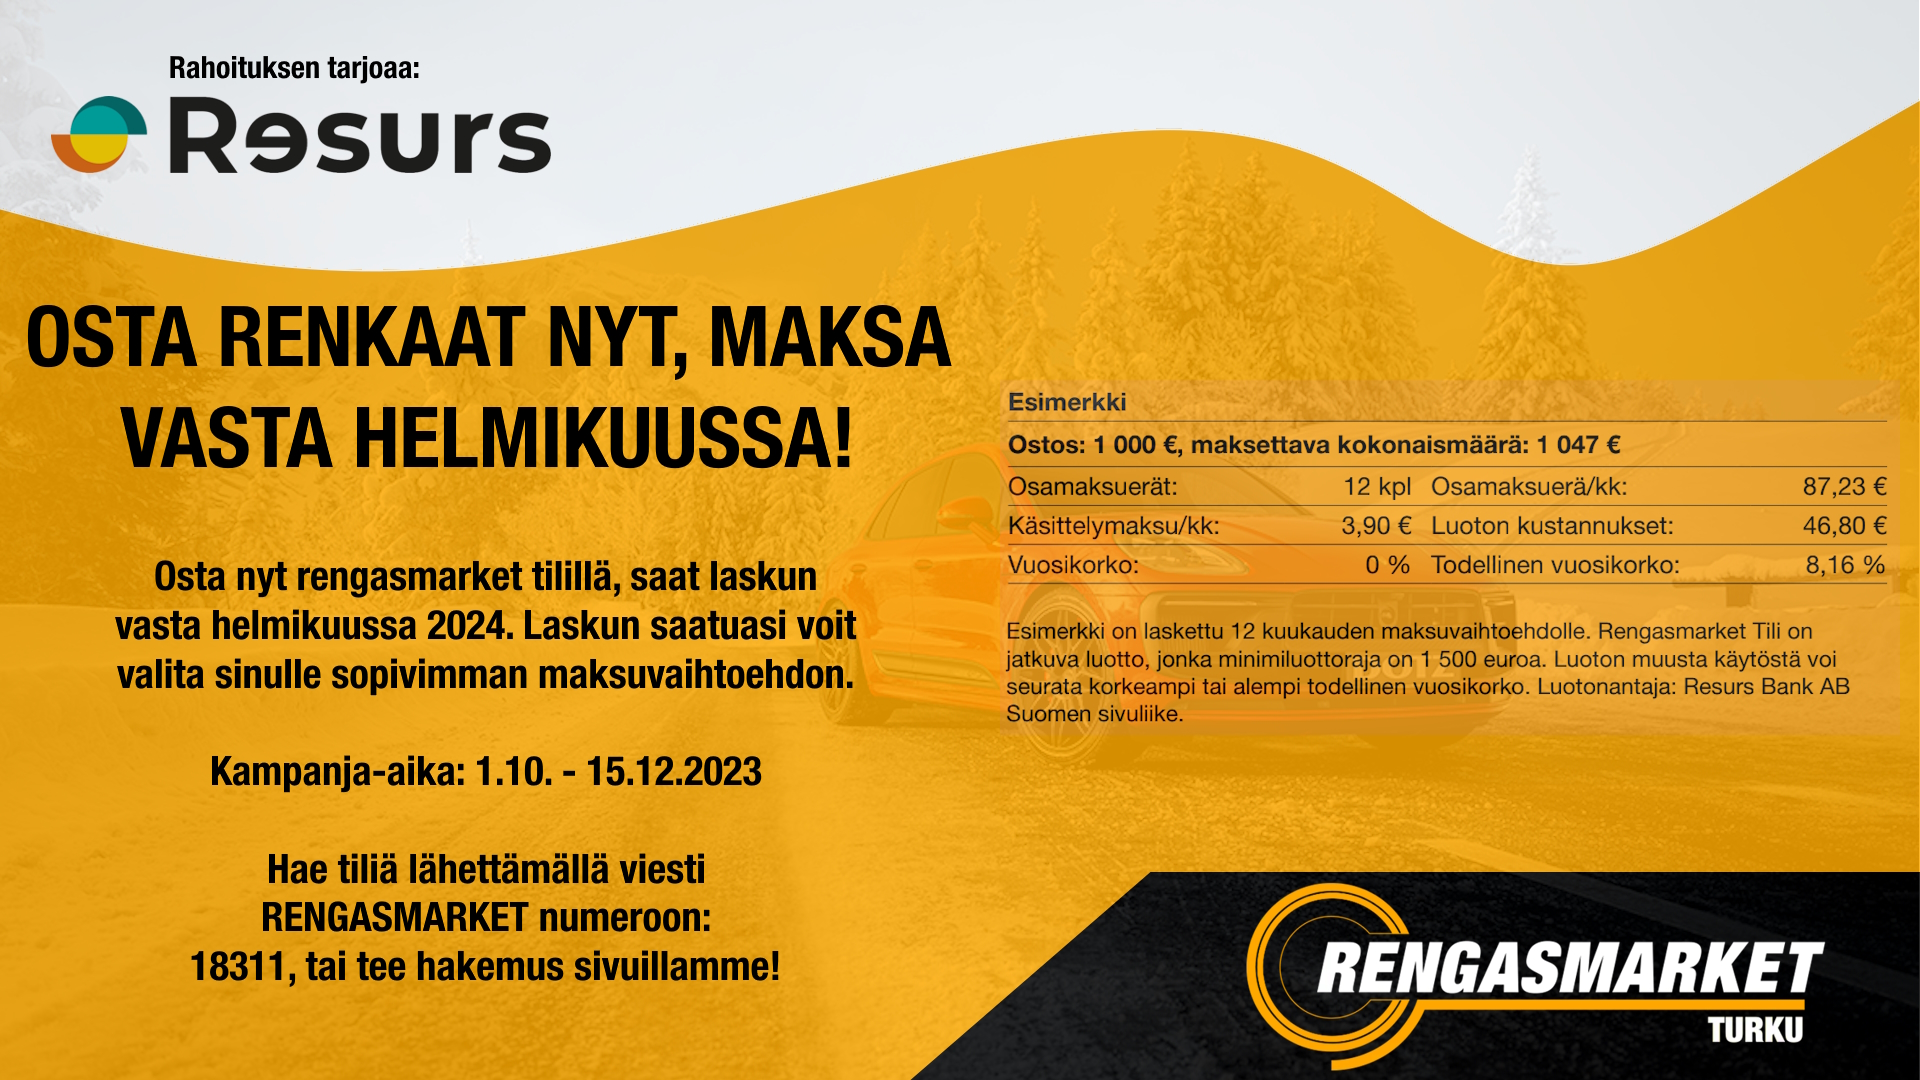 Images Rengasmarket Turku